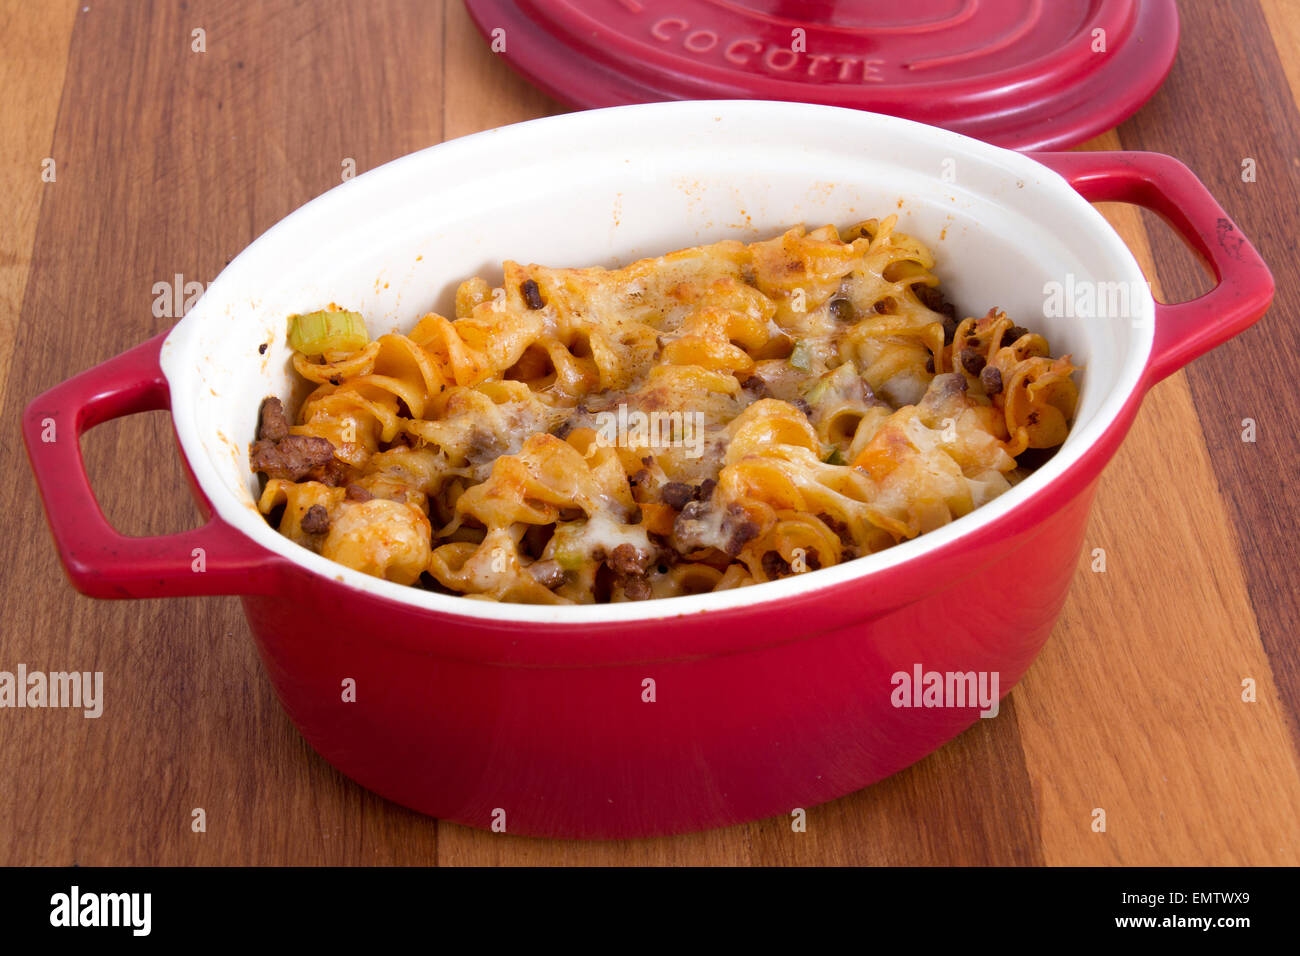 Carni bovine e il formaggio rotinis spirale piatto di pasta sulla tavola Foto Stock